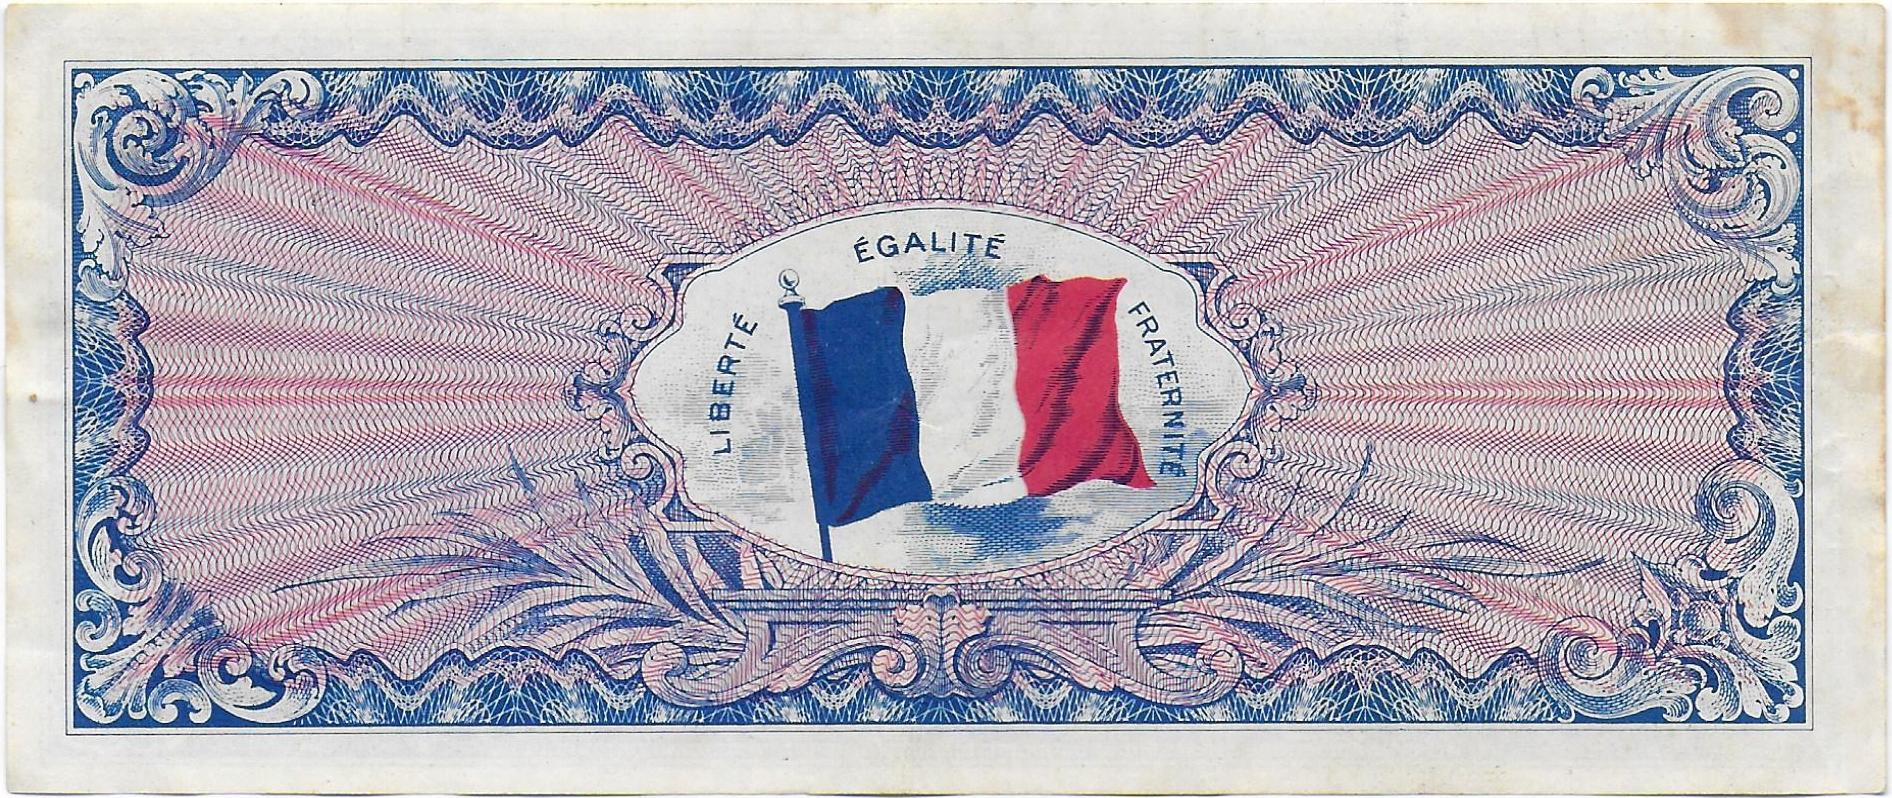 France 50 francs WWII back.jpg